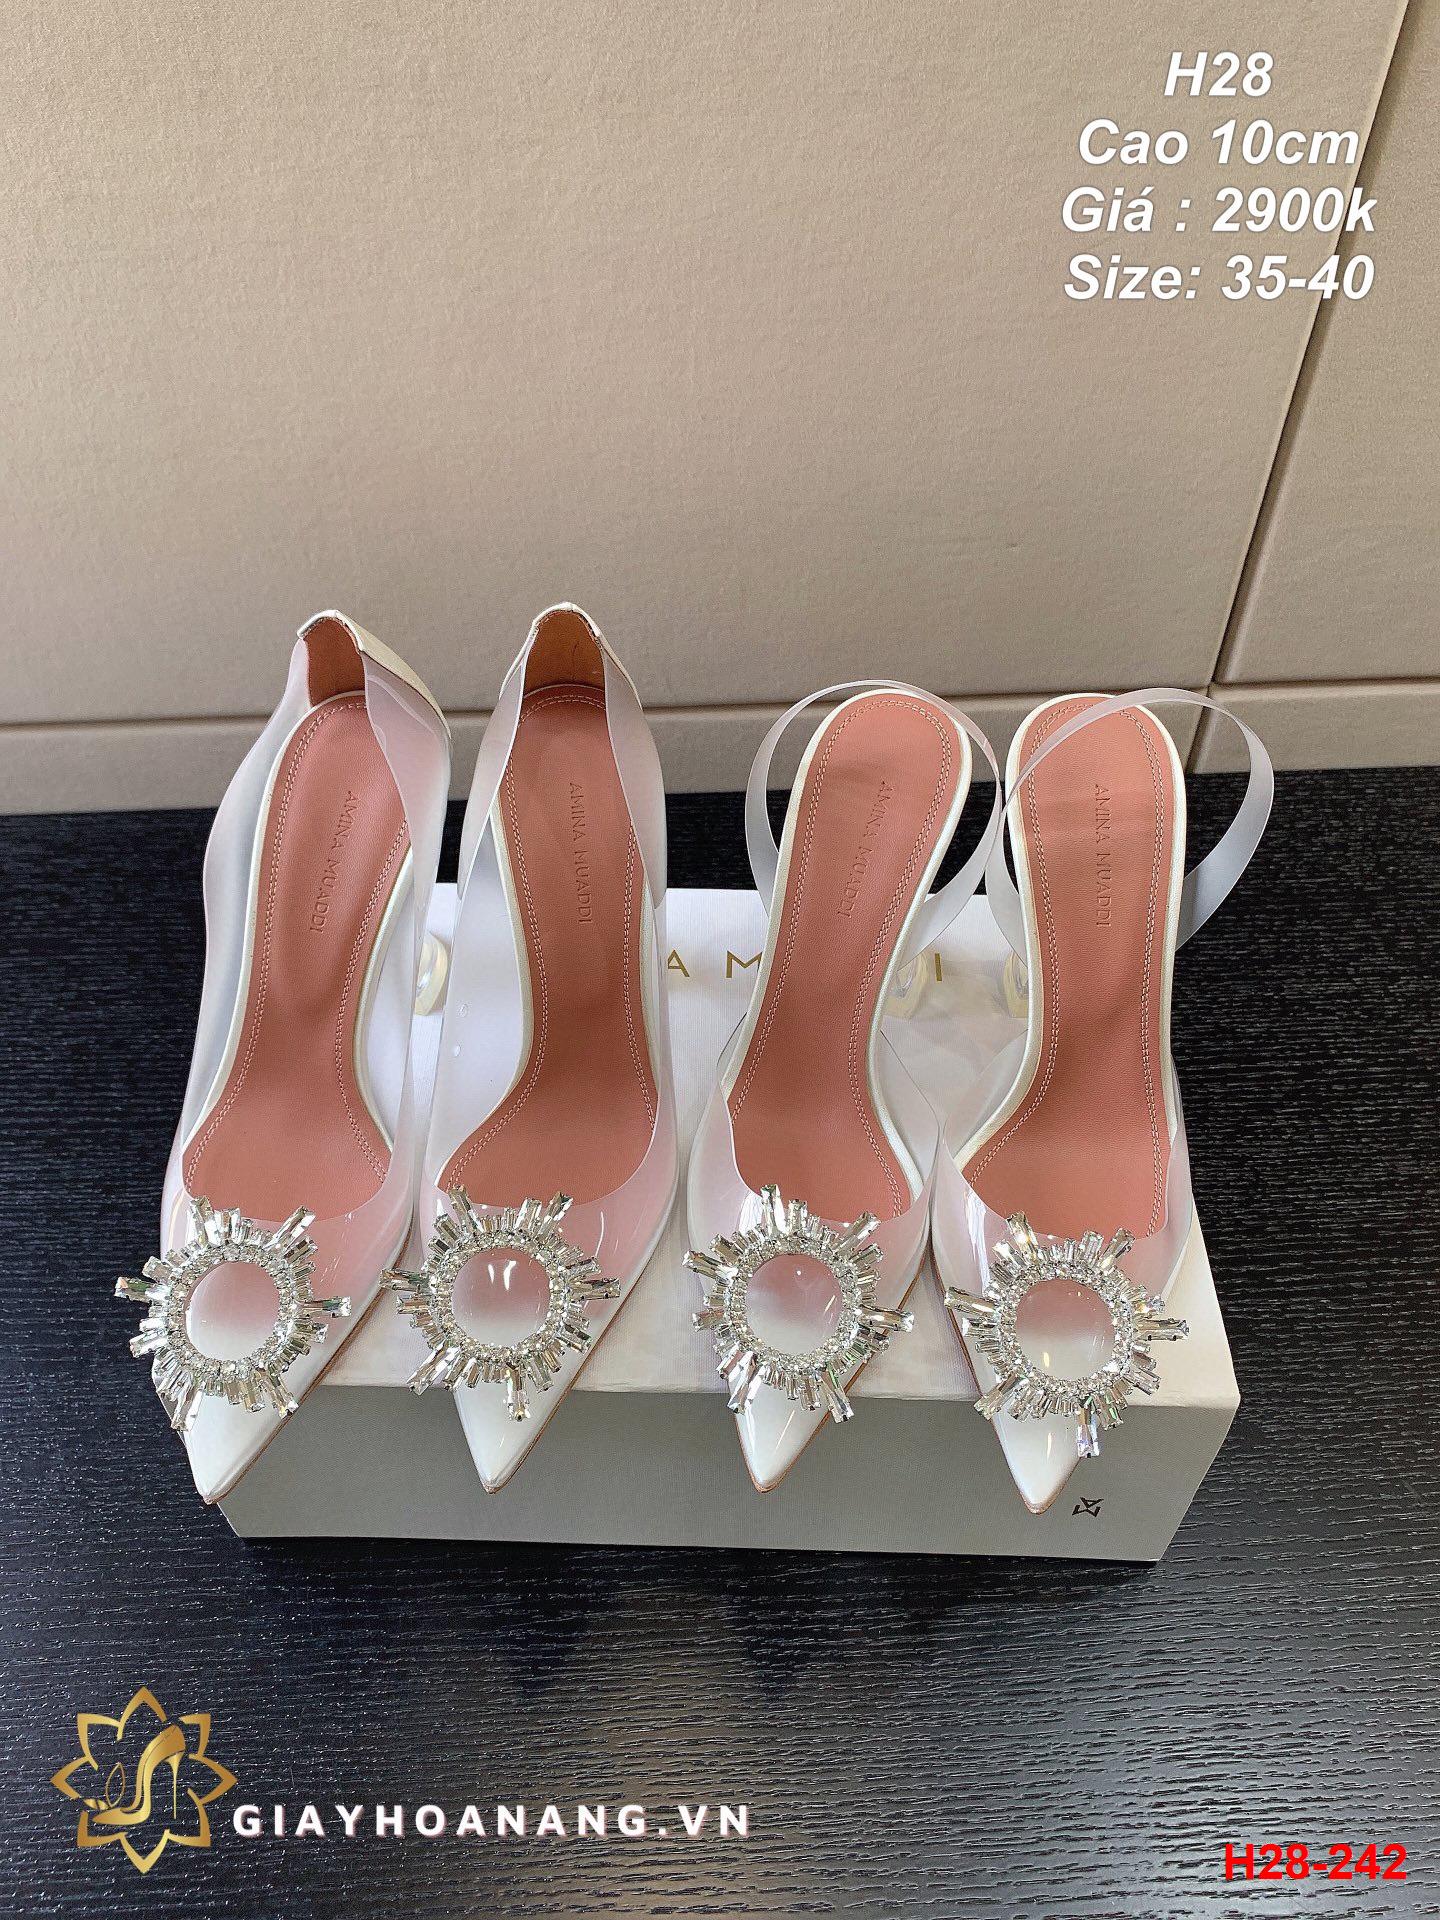 H28-242 Amina  Muaddi giày cao 10cm siêu cấp